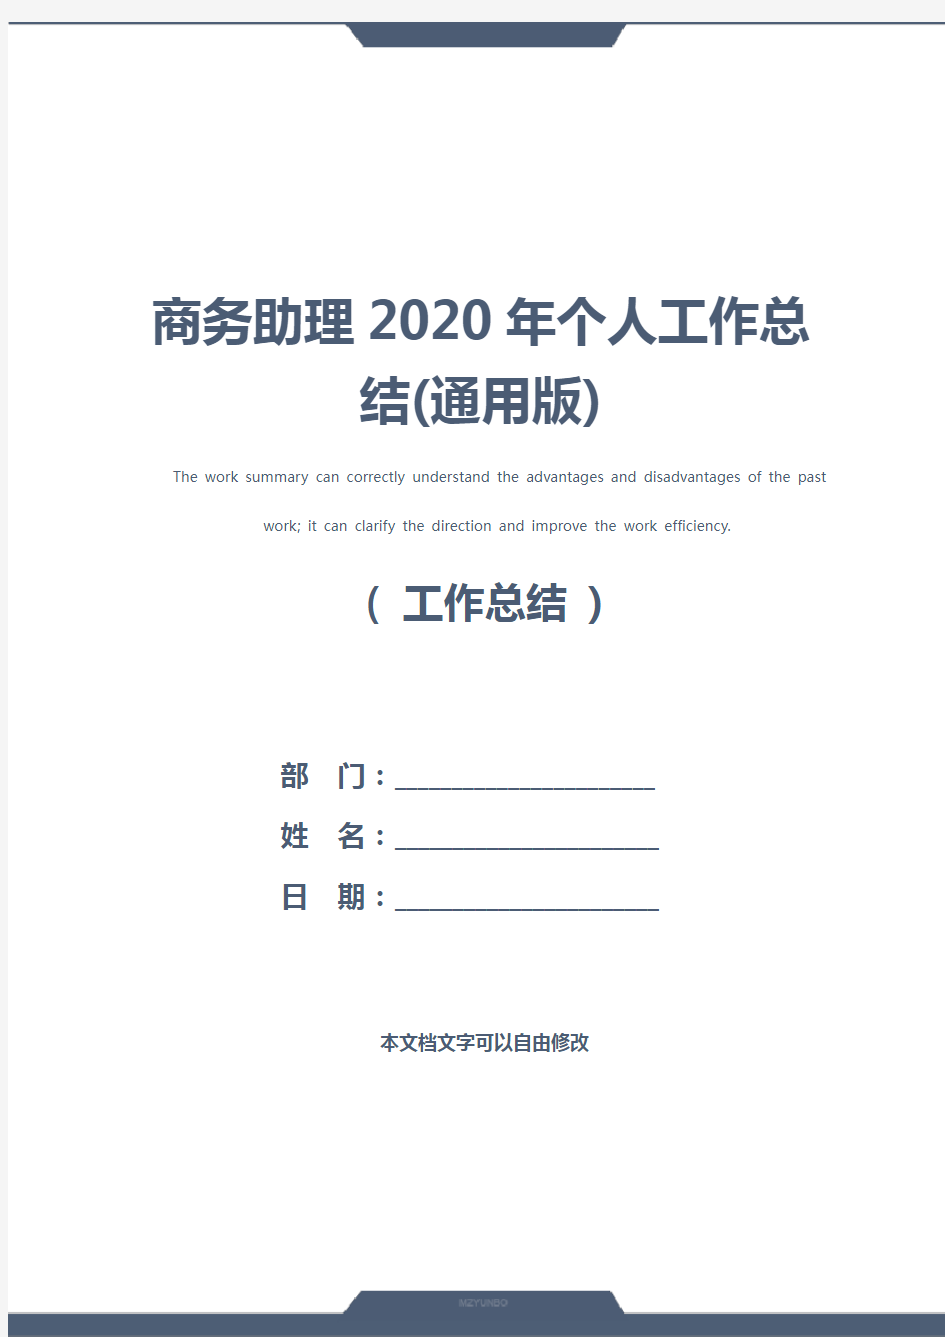 商务助理2020年个人工作总结(通用版)